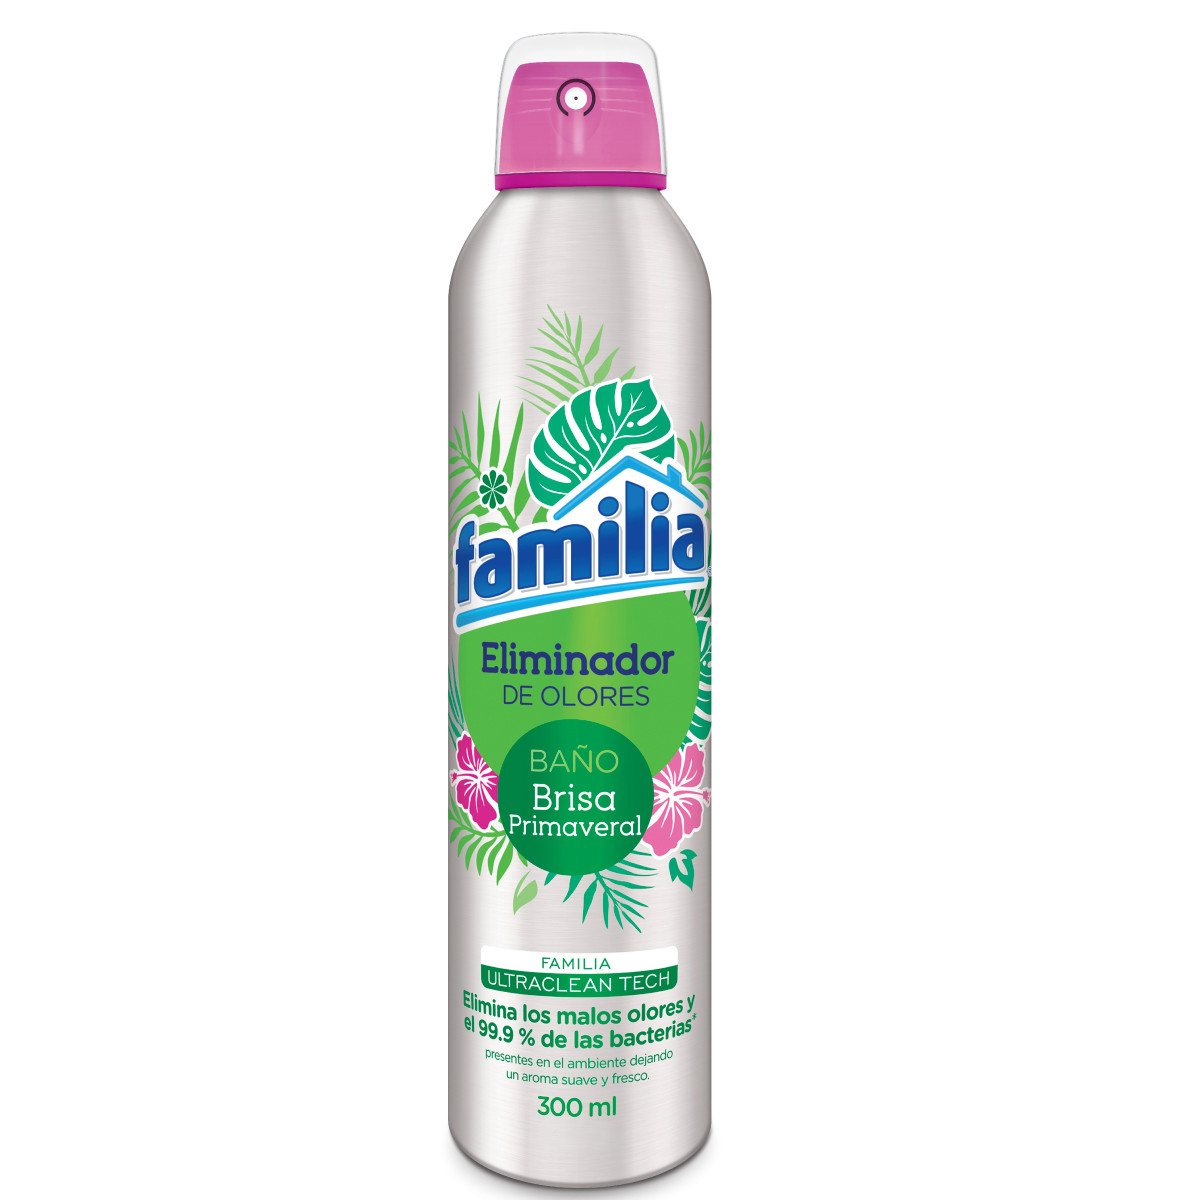 Imagen Inactiva Eliminador de olores Familia baño brisa x 300 ml